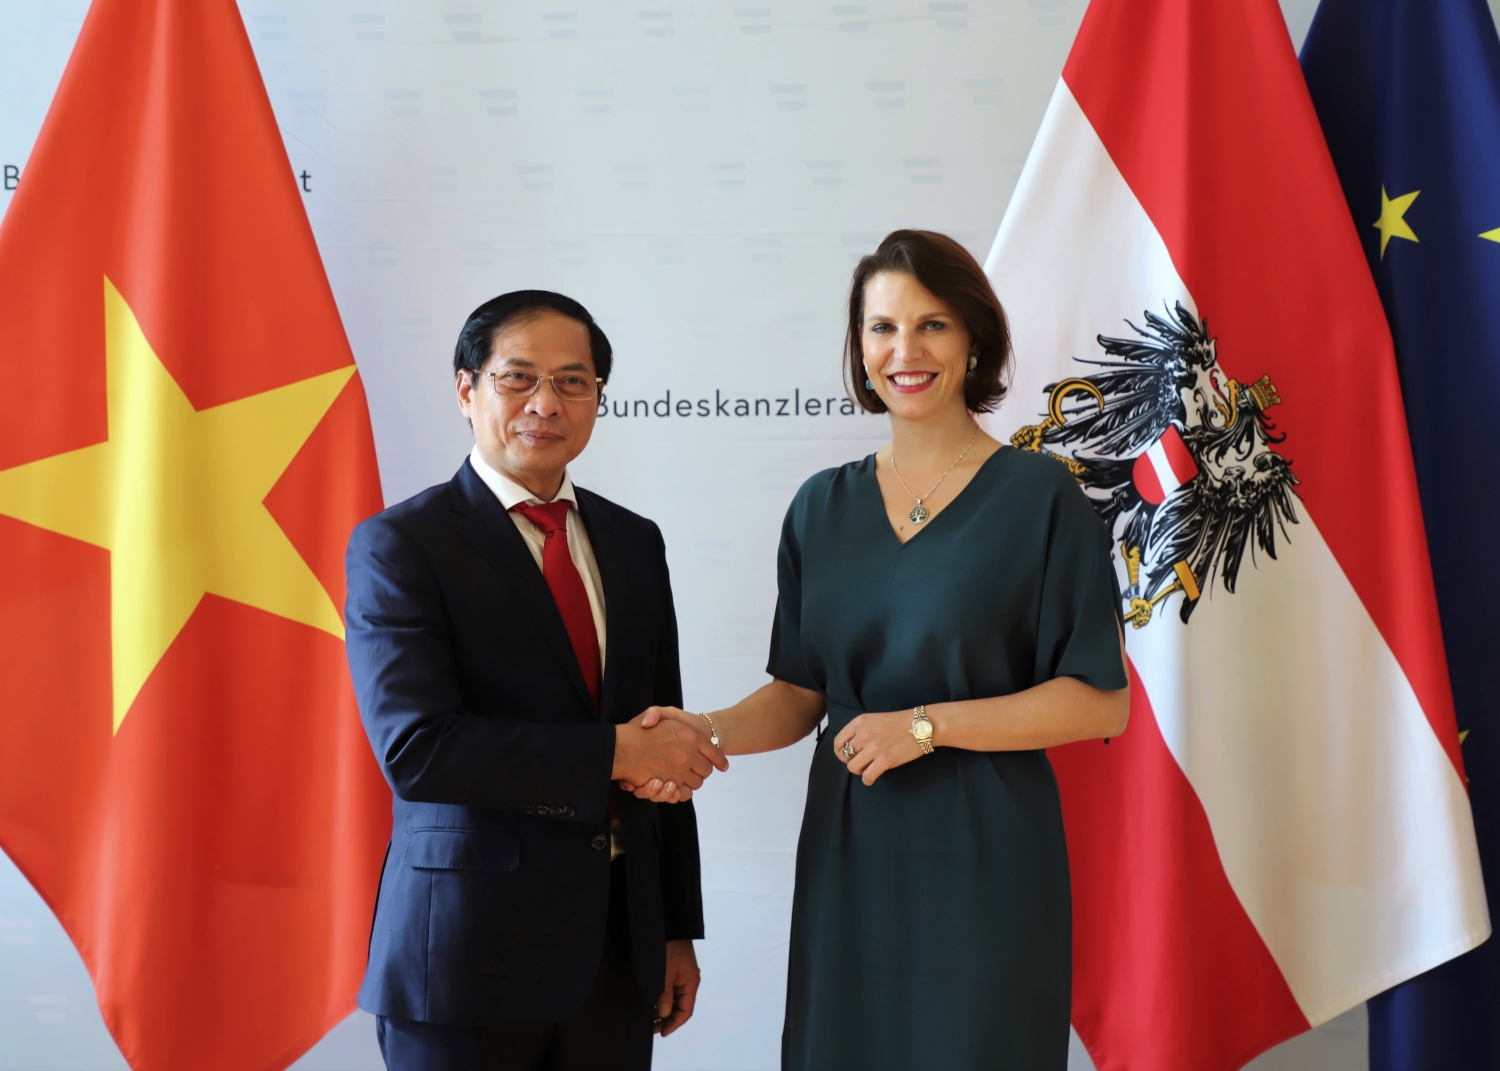 Bộ trưởng Ngoại giao Bùi Thanh Sơn thăm chính thức Cộng hòa Áo